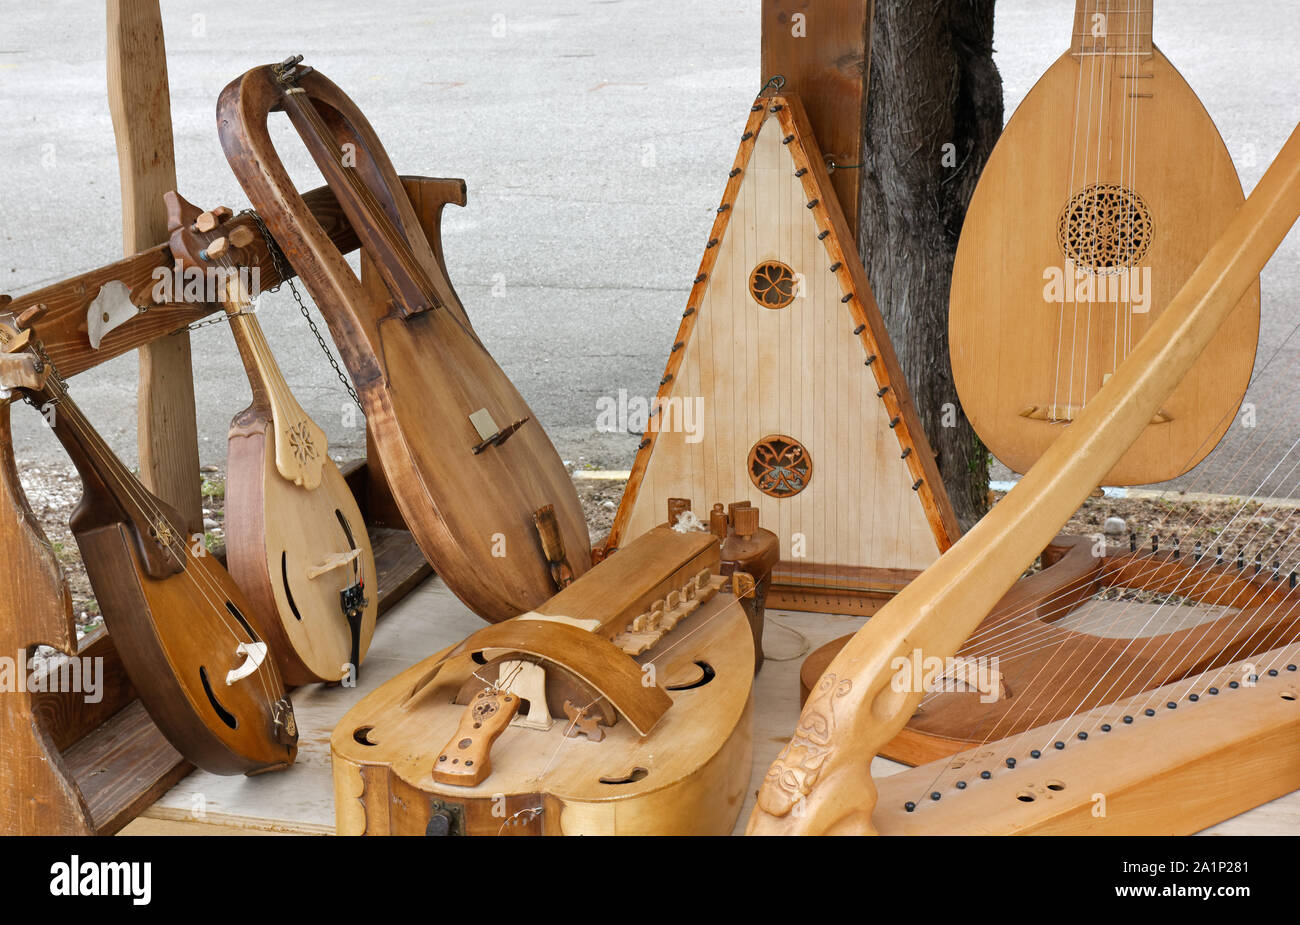 Affichage des instruments de musique à cordes anciennes Banque D'Images